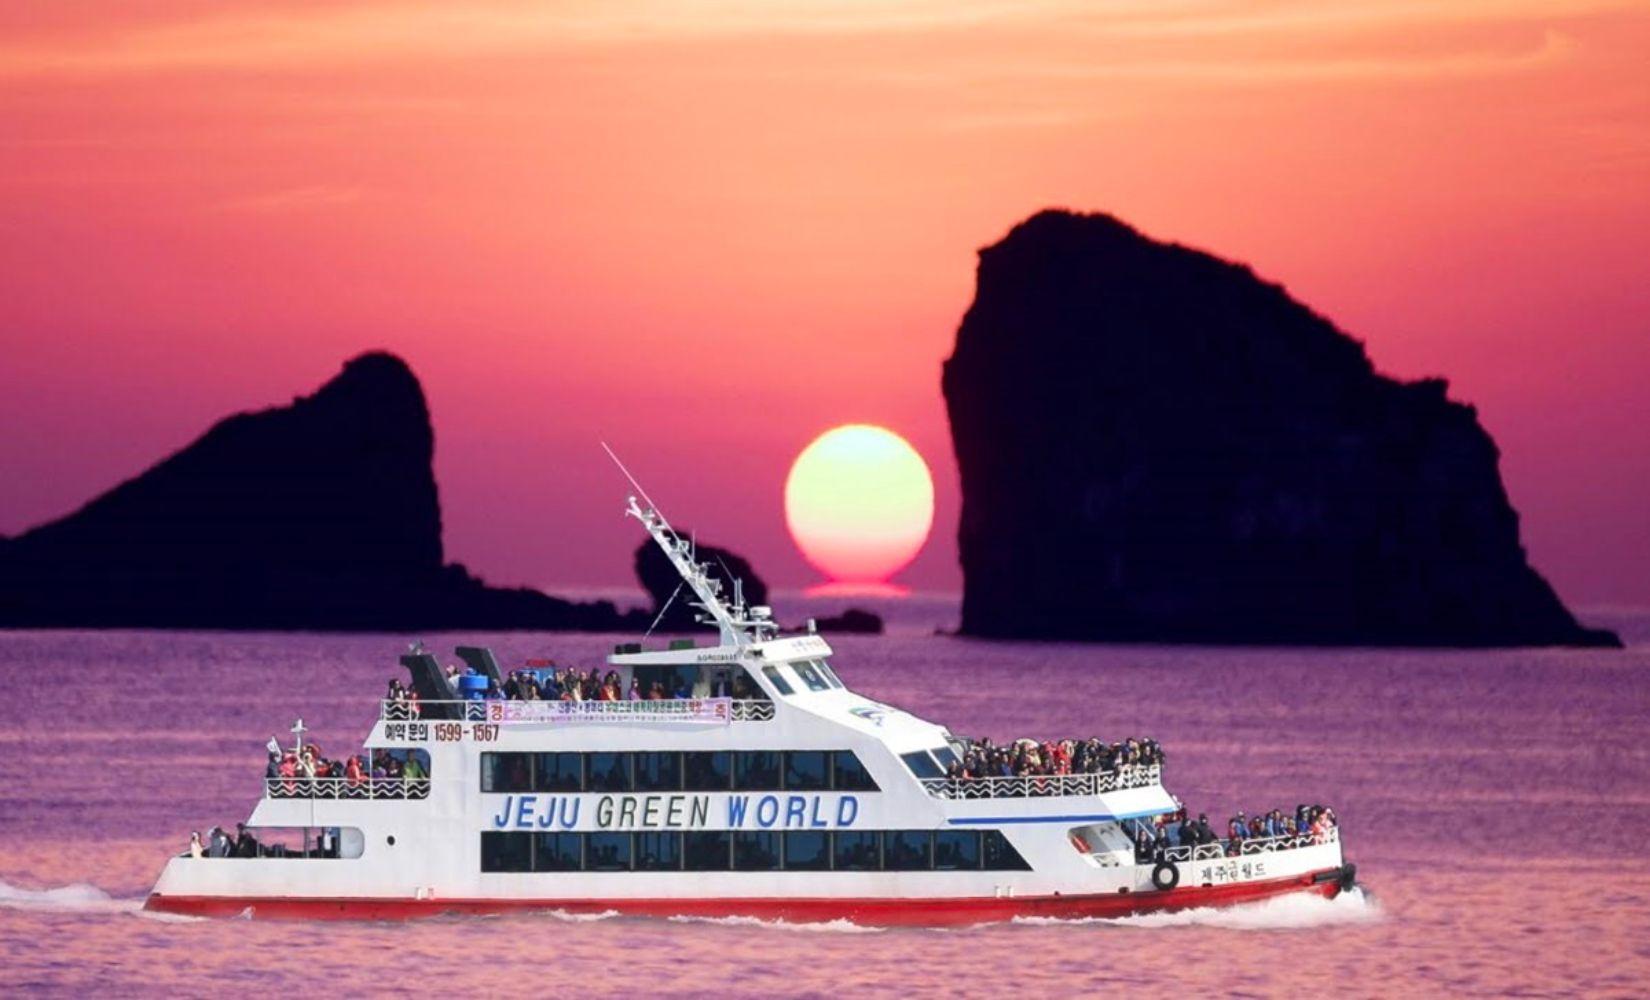 เรือสำราญซันบังซาน: ล่องเรือชมสถานที่สวยงามกว่า 20 แห่งรอบเกาะเชจู